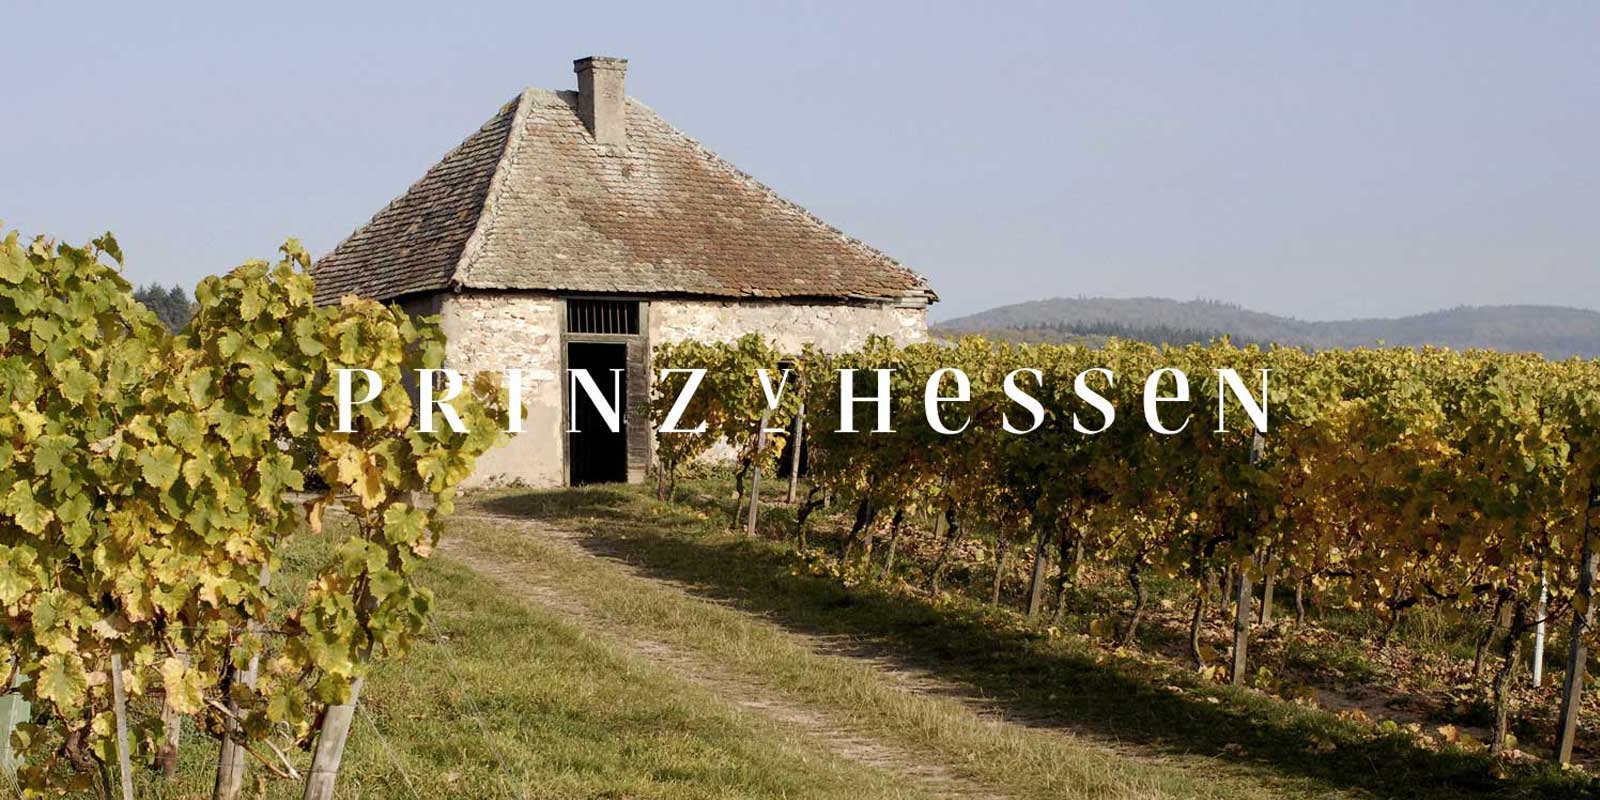 Crama Prince of Hesse - regiunea viticola Rheingau Crama PRINZ VON HESSEN din Johannisberg din Rheingau este unul dintre producatorii remarcabili de Riesling din Germania si este membru fondator al VDP al asociatiei regionale Rheingau. Numeroase recunoasteri in tara si in strainatate reflecta crama PRINZ VON HESSEN, care se afla la cel mai inalt nivel. Vinurile si vinurile spumante de la crama PRINZ VON HESSEN au castigat numeroase premii si au primit premii internationale inalte.